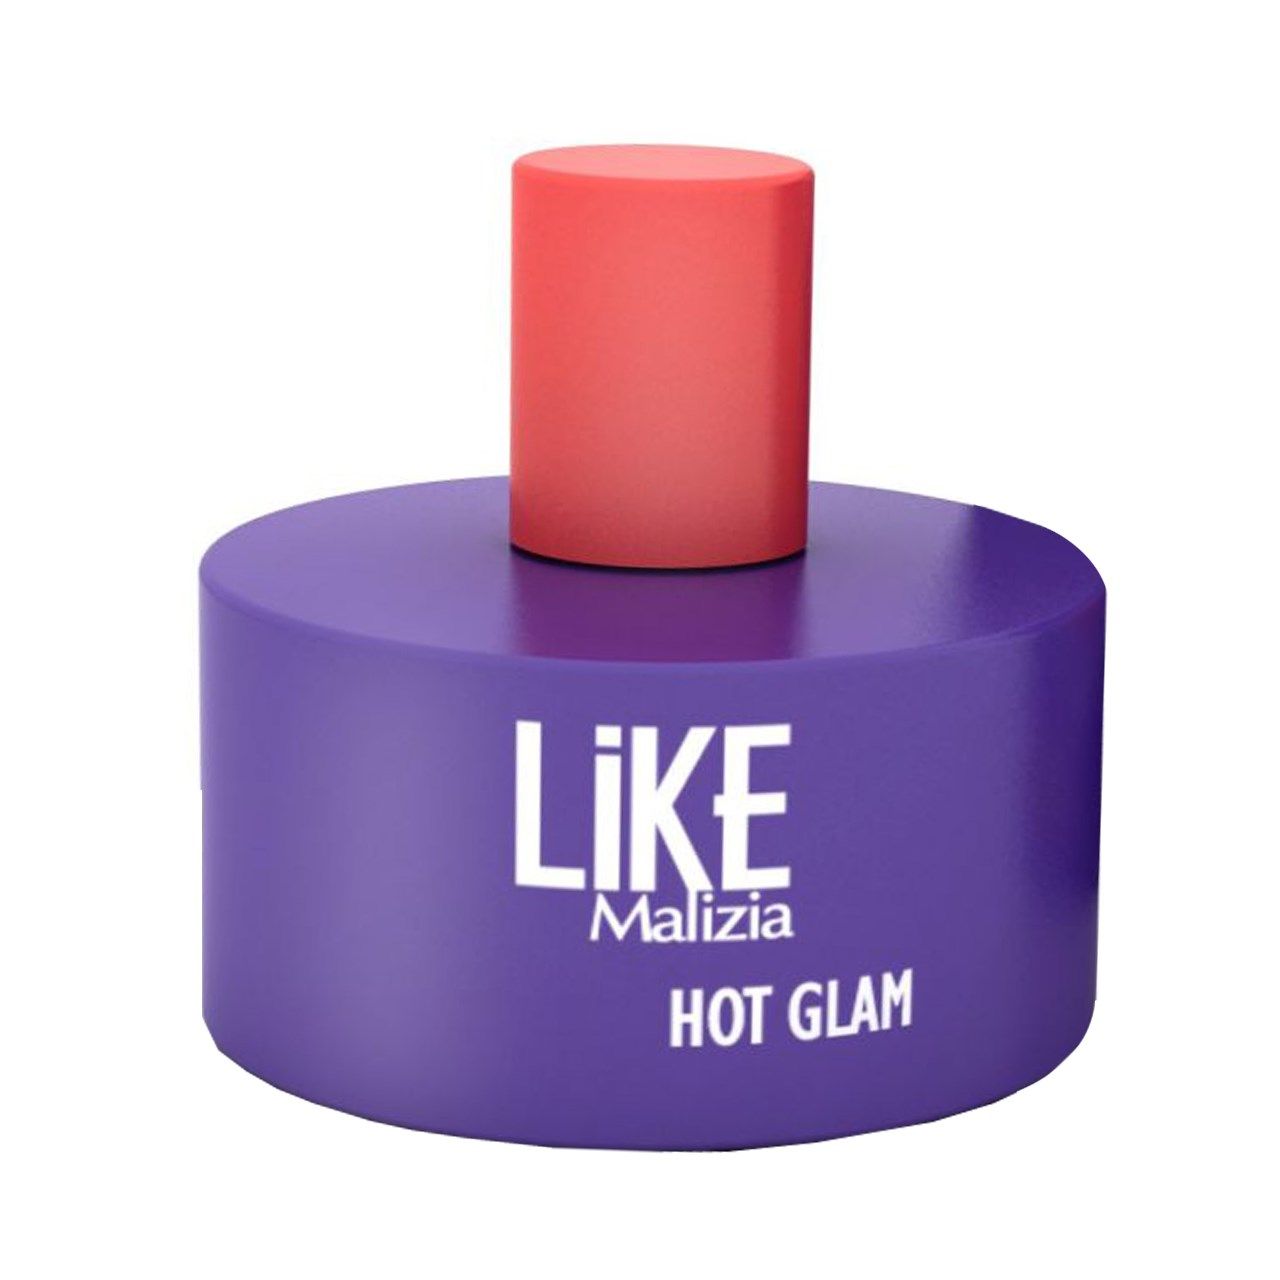 ادو تویلت زنانه لایک مالیزیا مدل Hot Glam حجم 100 میلی لیتر -  - 1